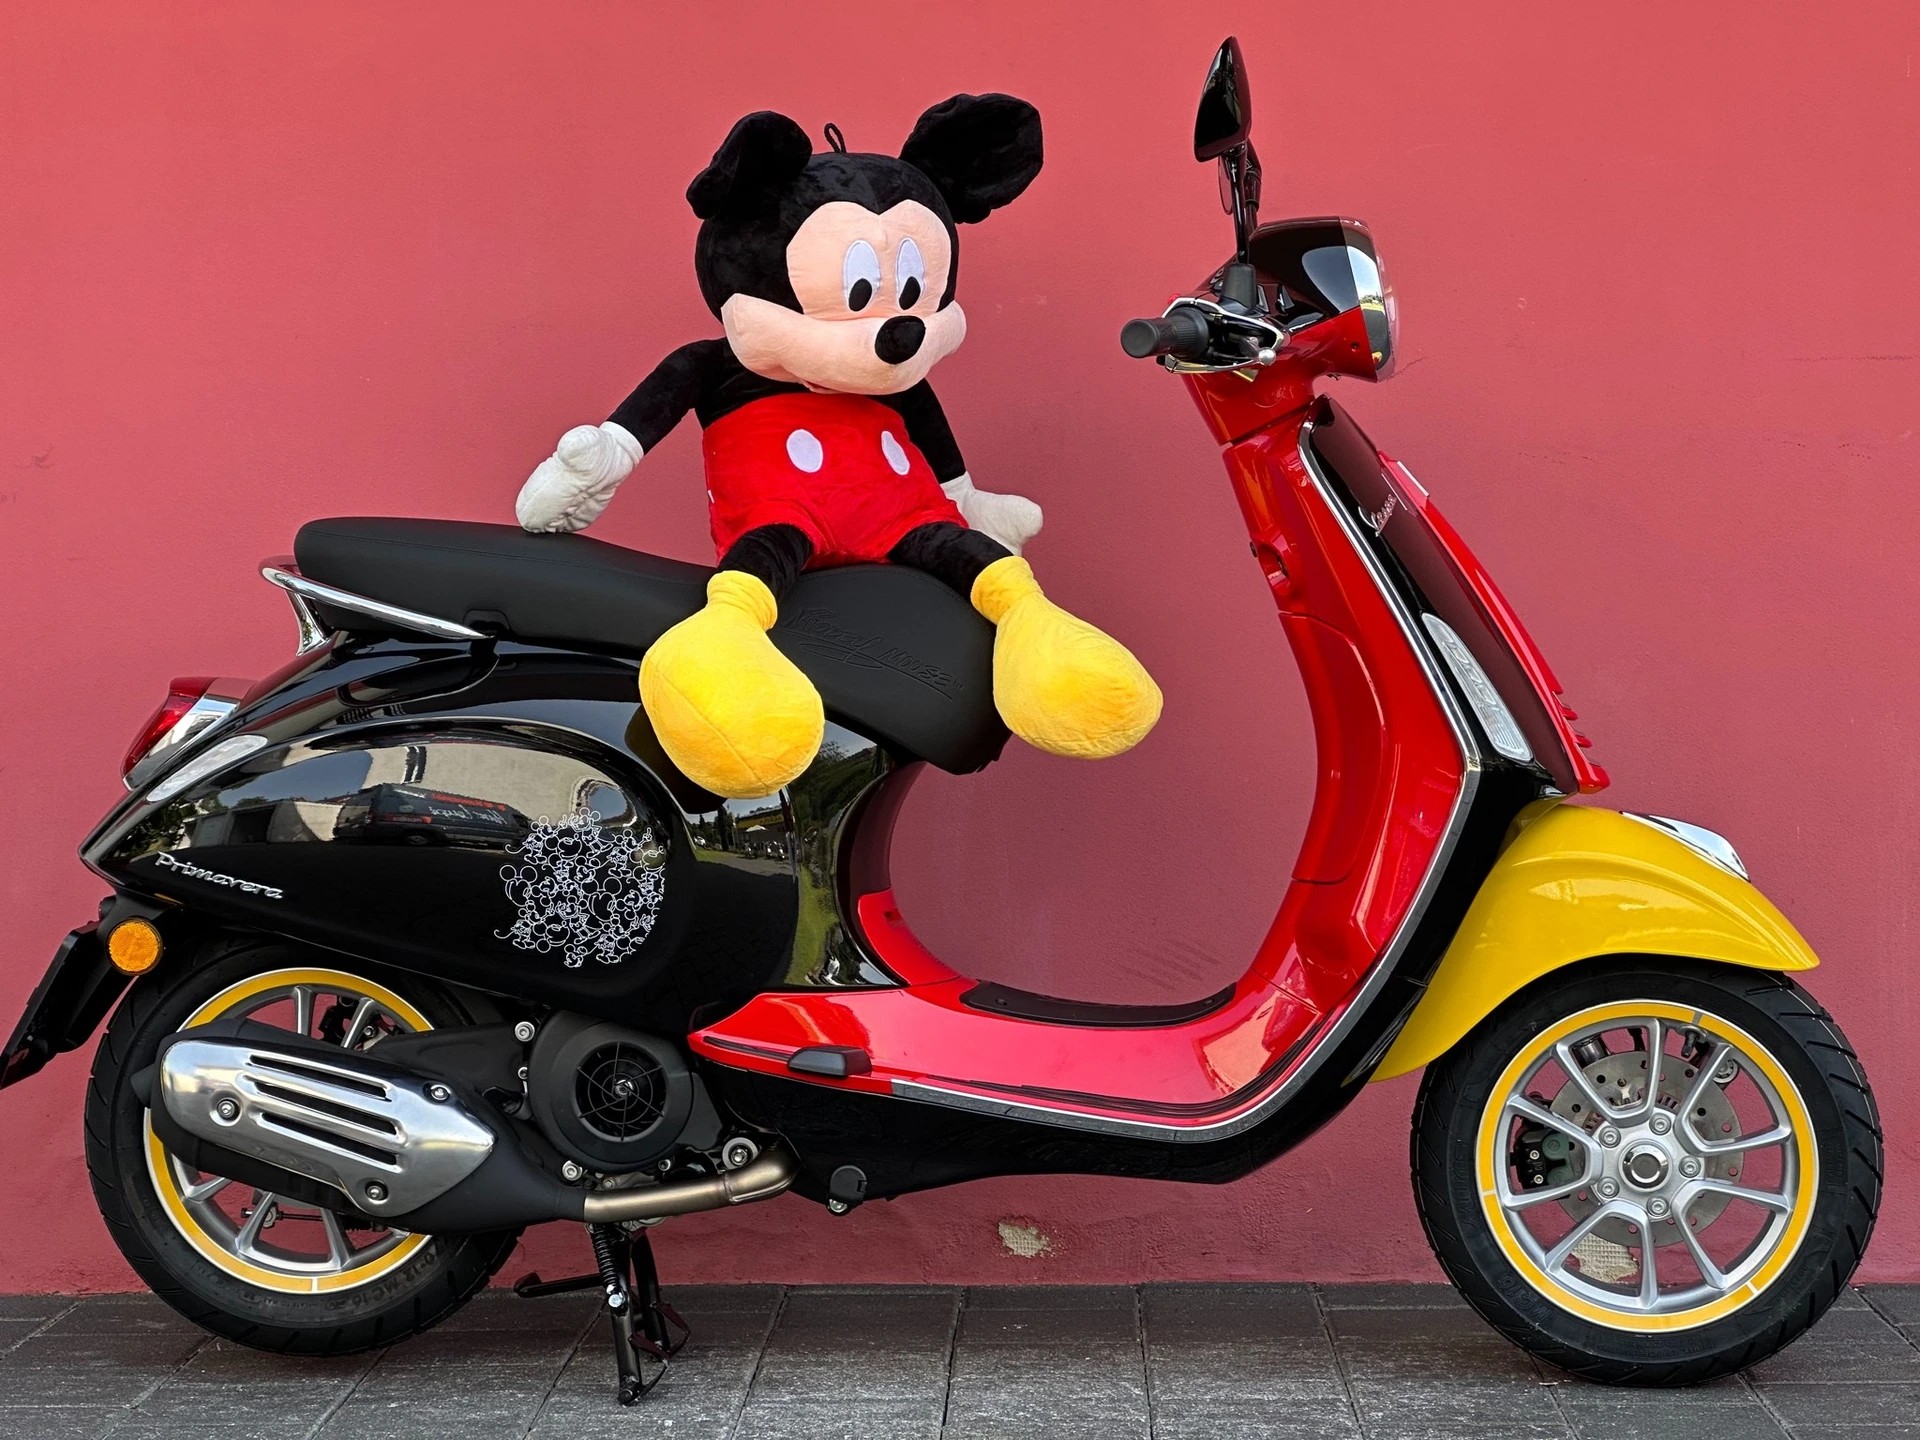 PIAGGIO Vespa 125 Primavera Disney Mickey Mouse Edition